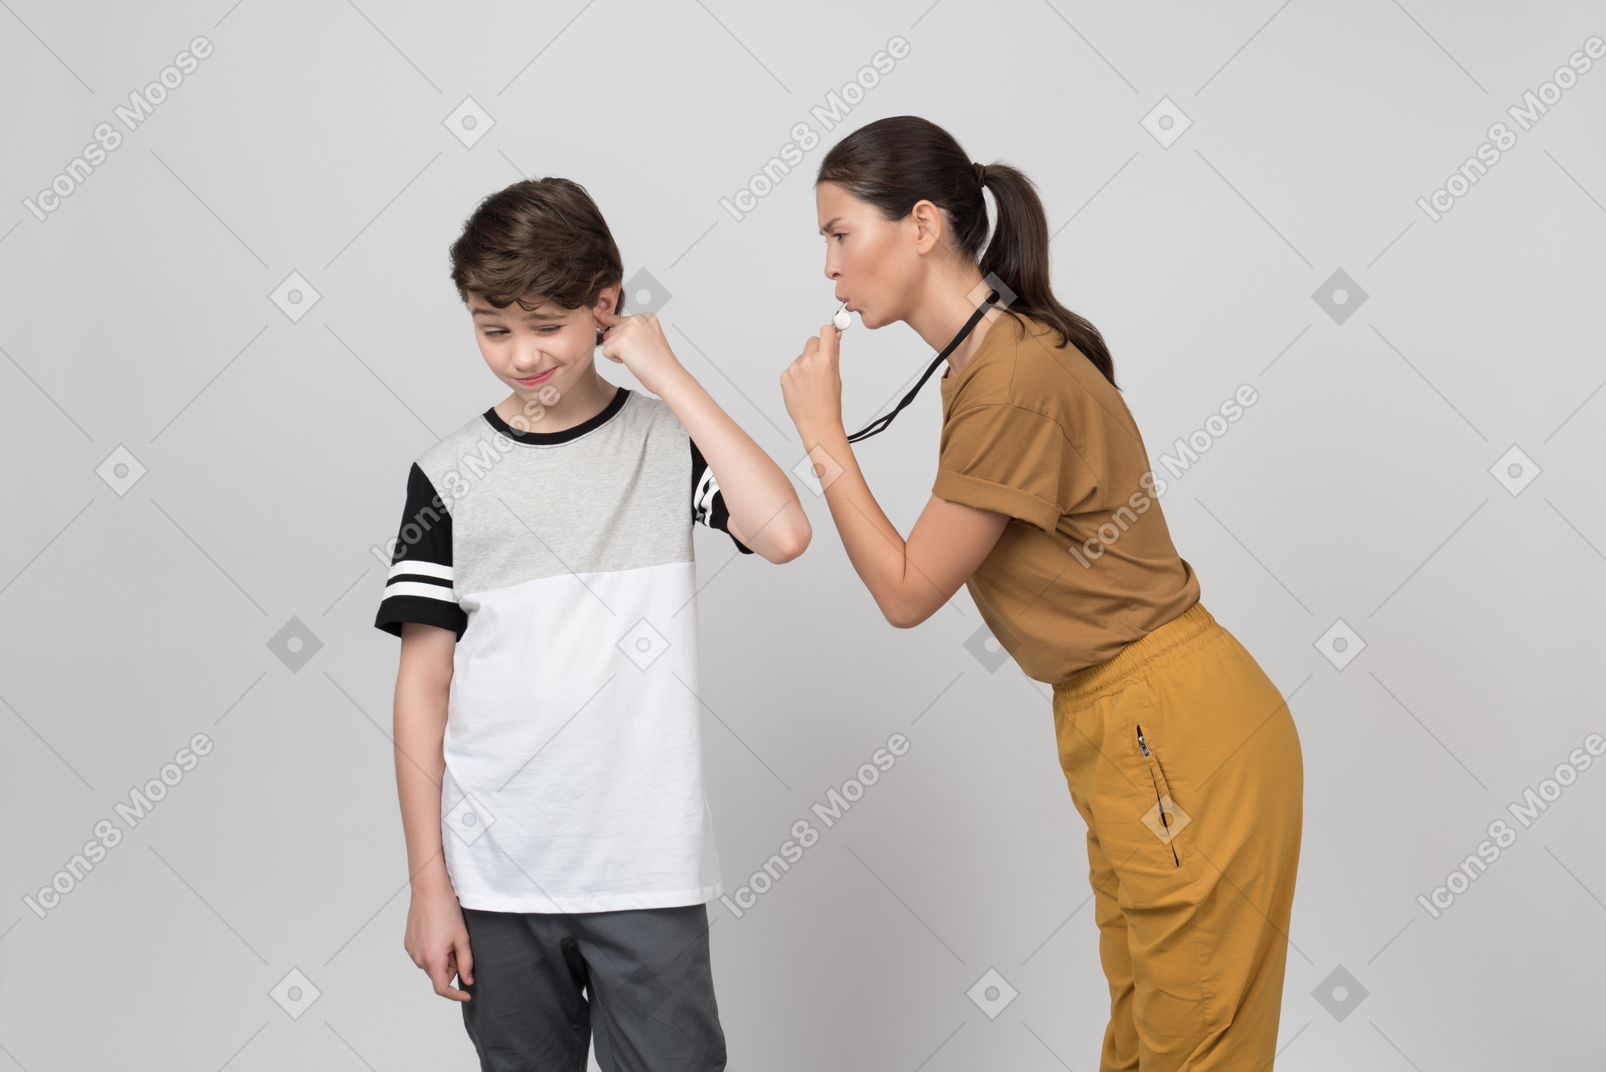 Professora de pe assobiando para seu aluno enquanto ele está fechando a orelha